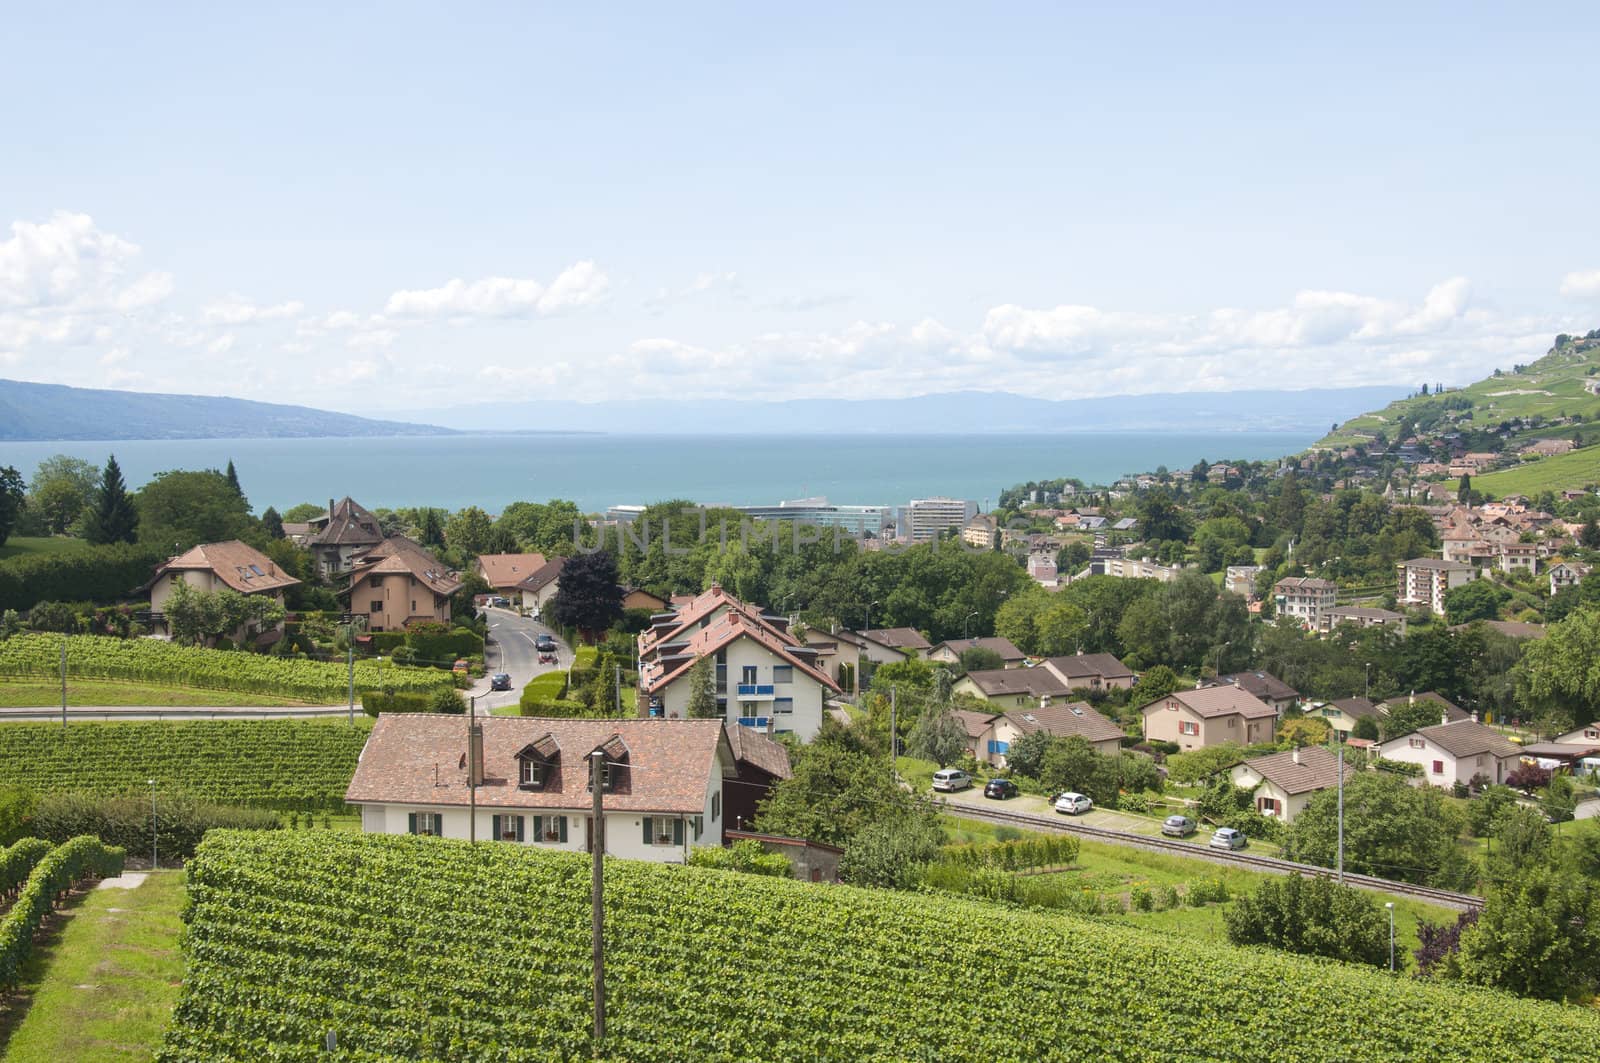 Houses amidst vineyards by Lake Geneva in Vevey, Switzerland







Houses amidst vineyards in Vevey, Switzerland